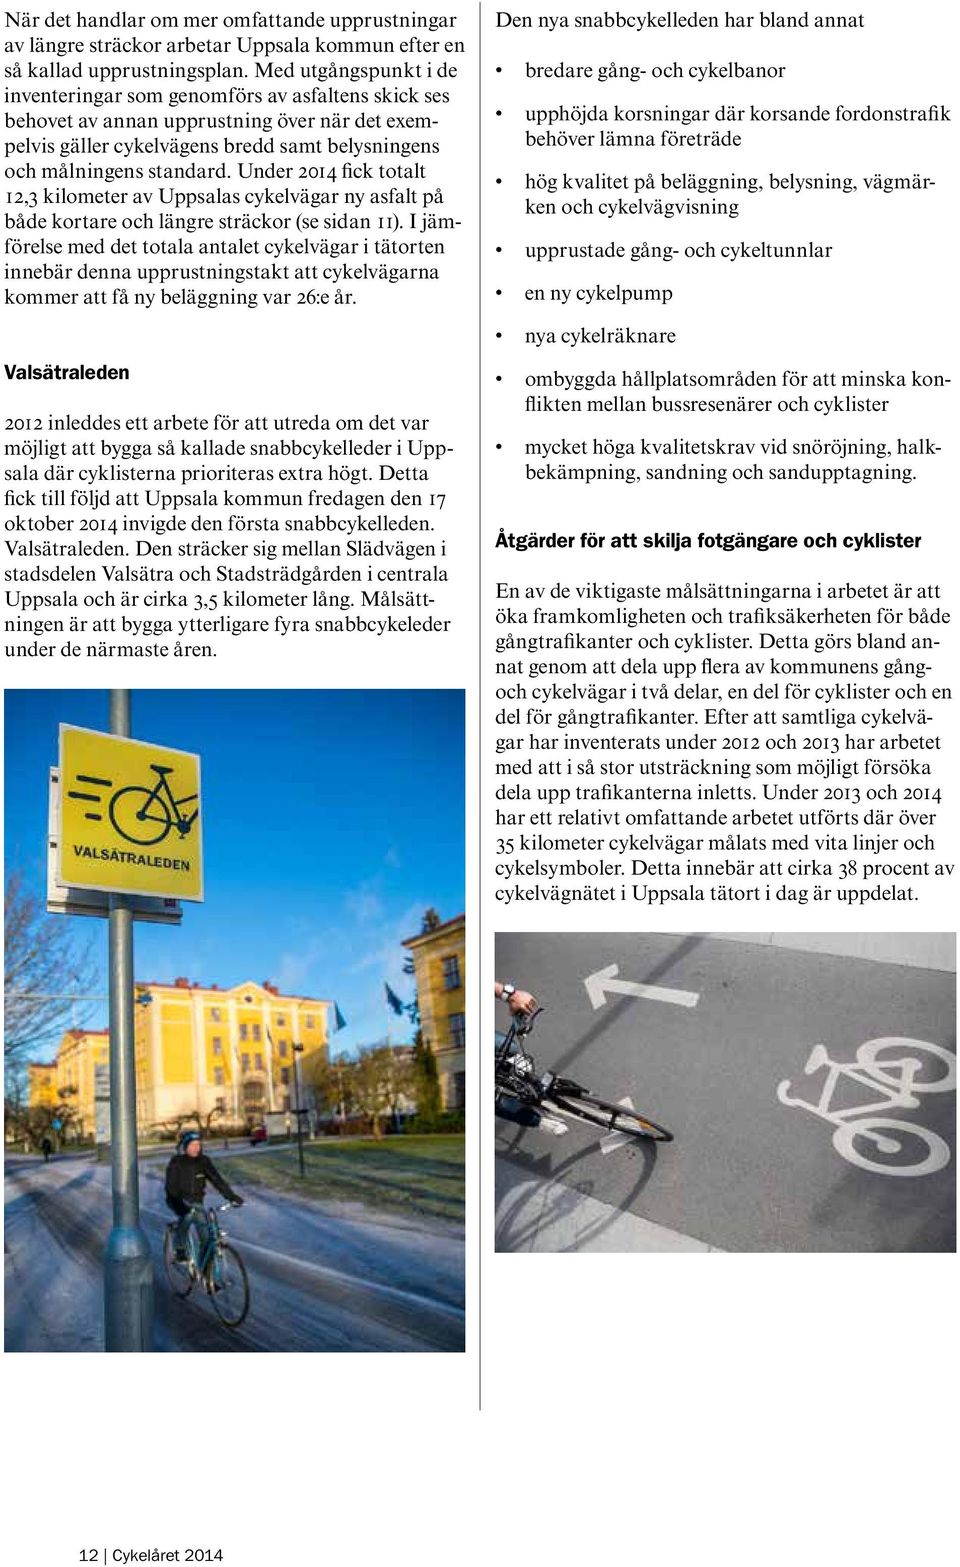 Under 2014 fick totalt 12,3 kilometer av Uppsalas cykelvägar ny asfalt på både kortare och längre sträckor (se sidan 11).